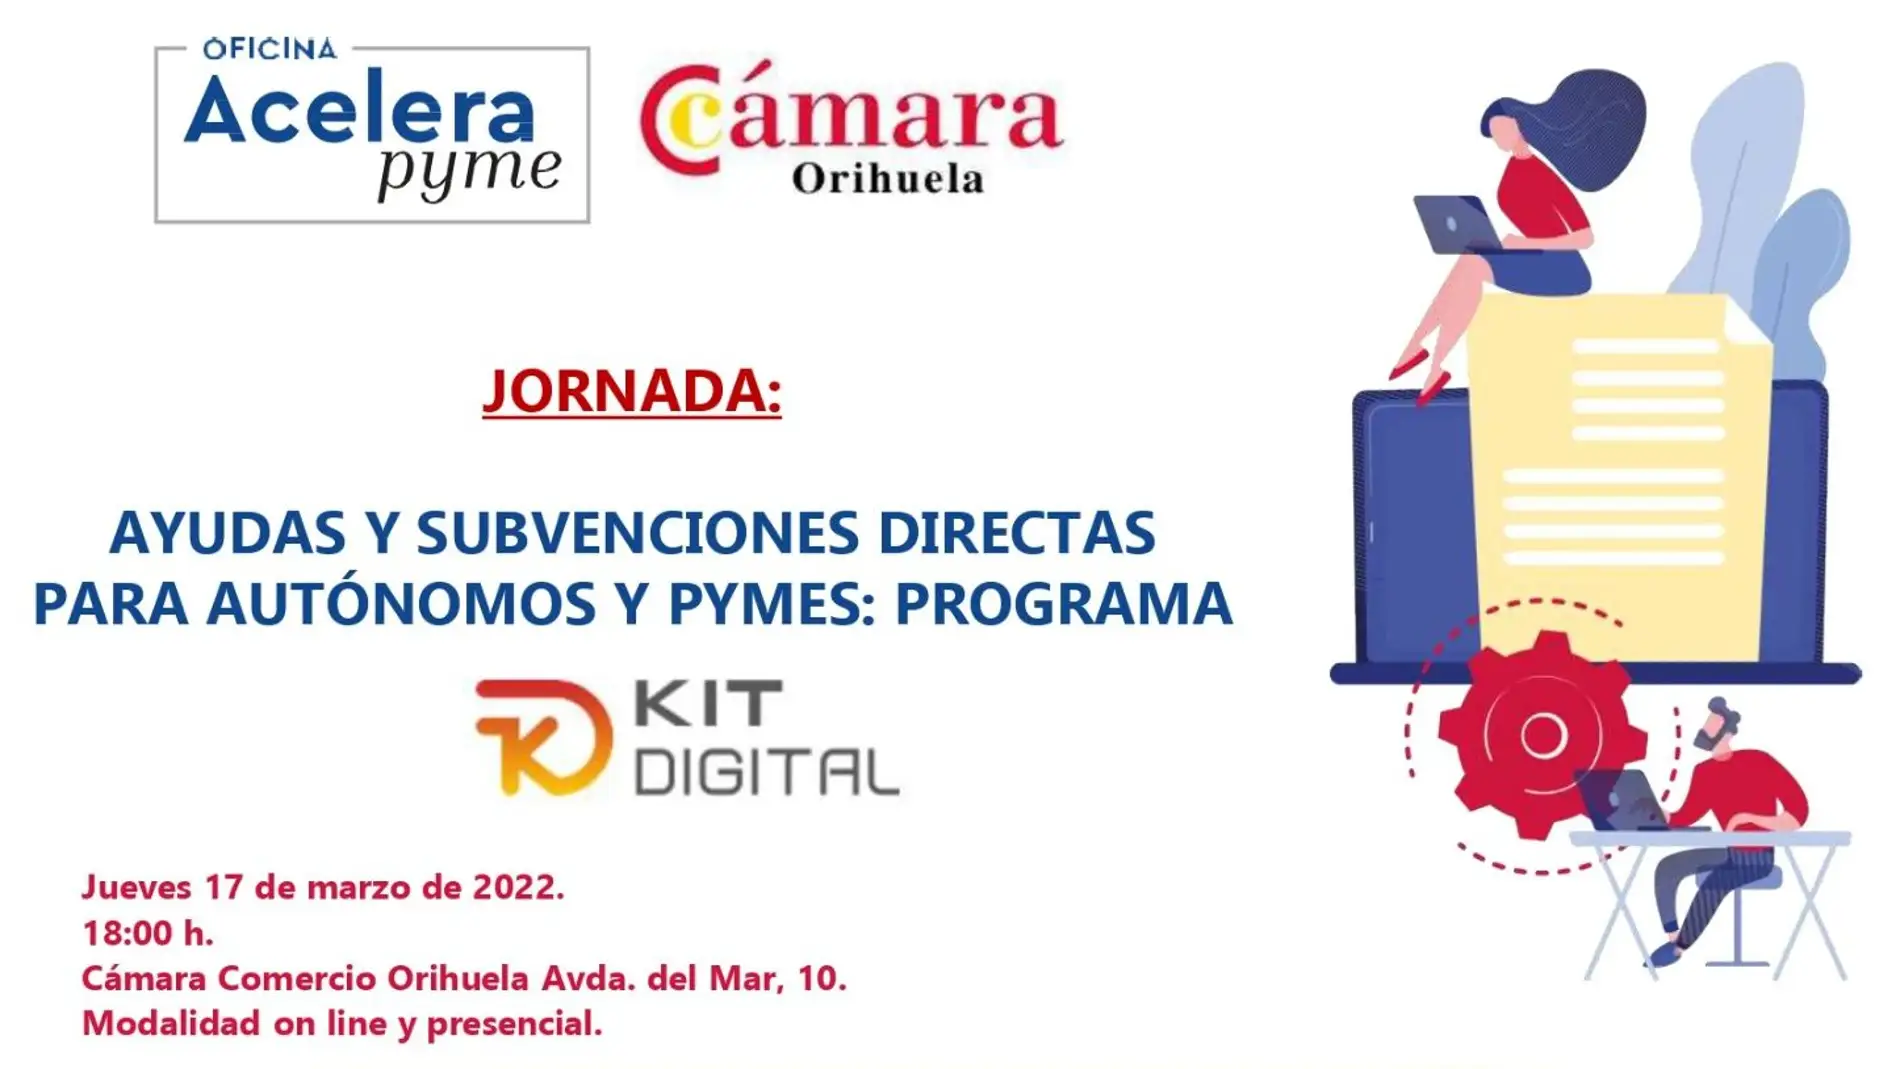 Cámara Orihuela organiza una jornada para informar a las empresas de las ayudas del programa Kit Digital 